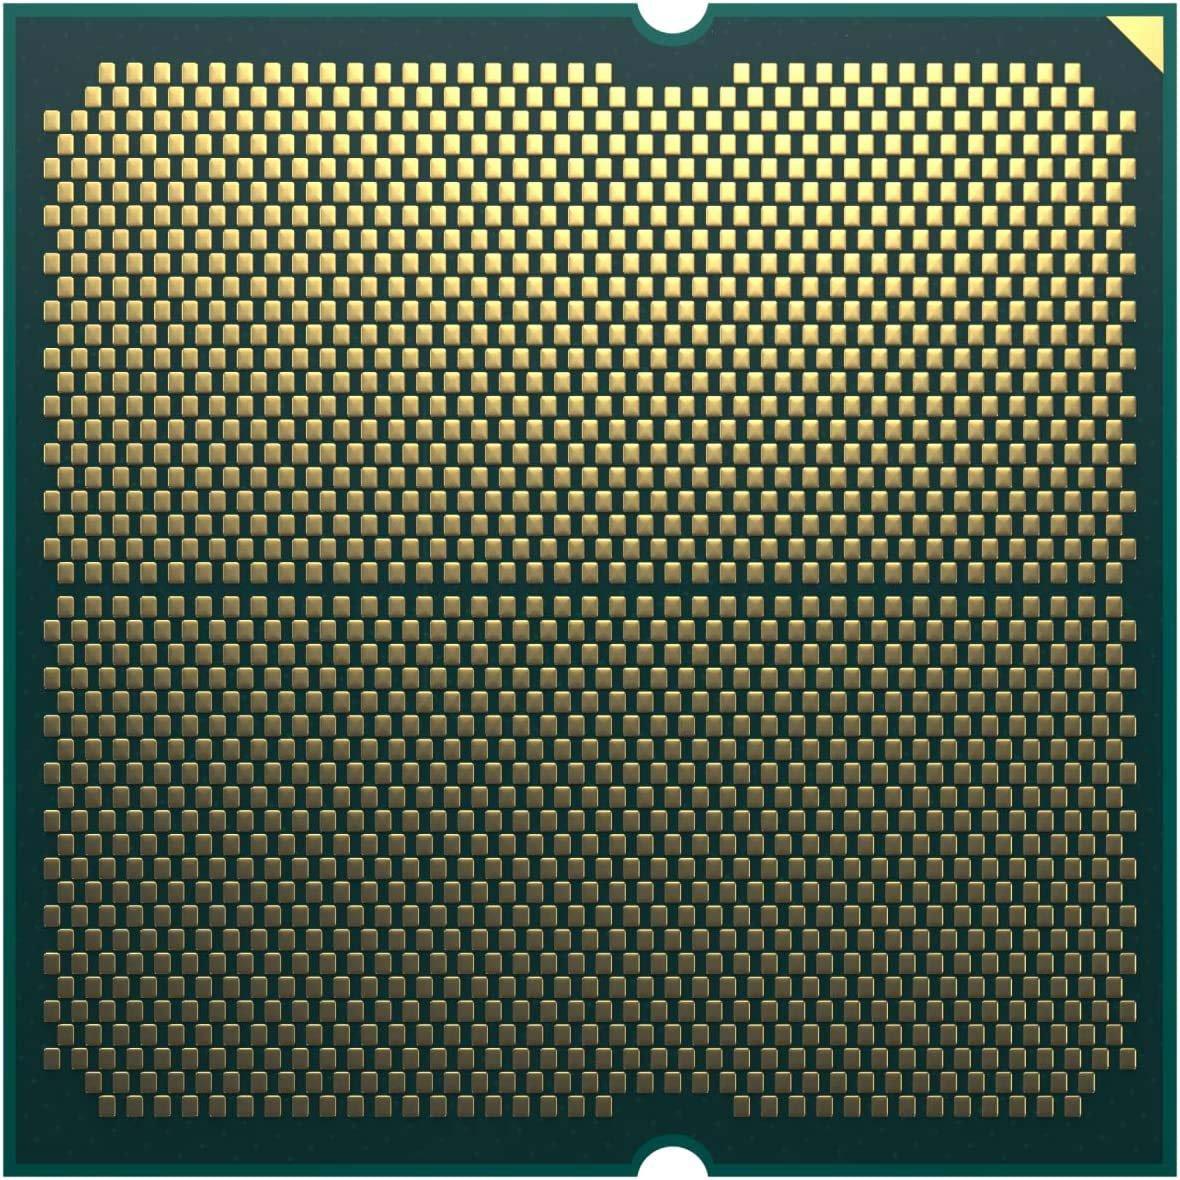 AMD Ryzen 9 7900X 12 Core AM5 CPU/Processor LN128866 - 100